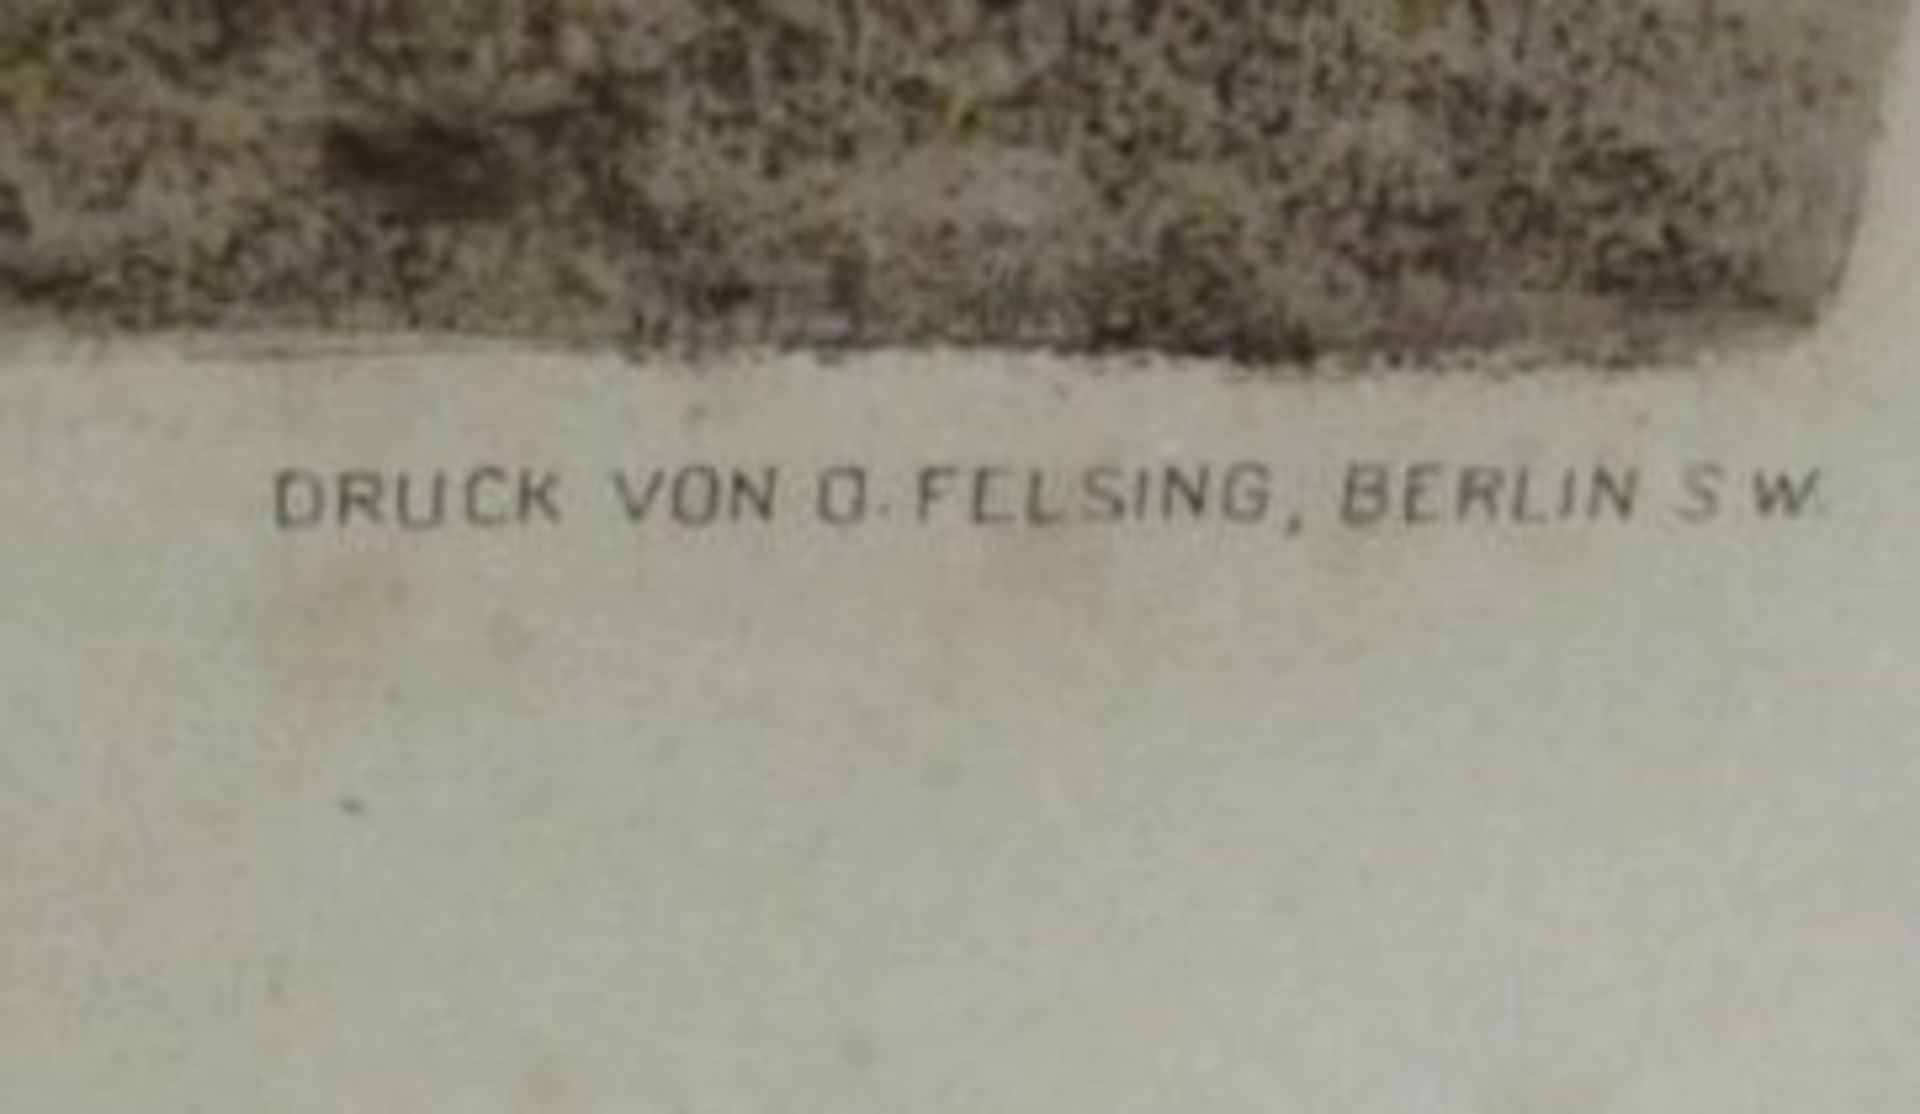 gr. Radierung von Wilhem Feldmann, gedruck von Felsing Berlin, ungerahmt, BG 60 x 75cm. - Bild 2 aus 3